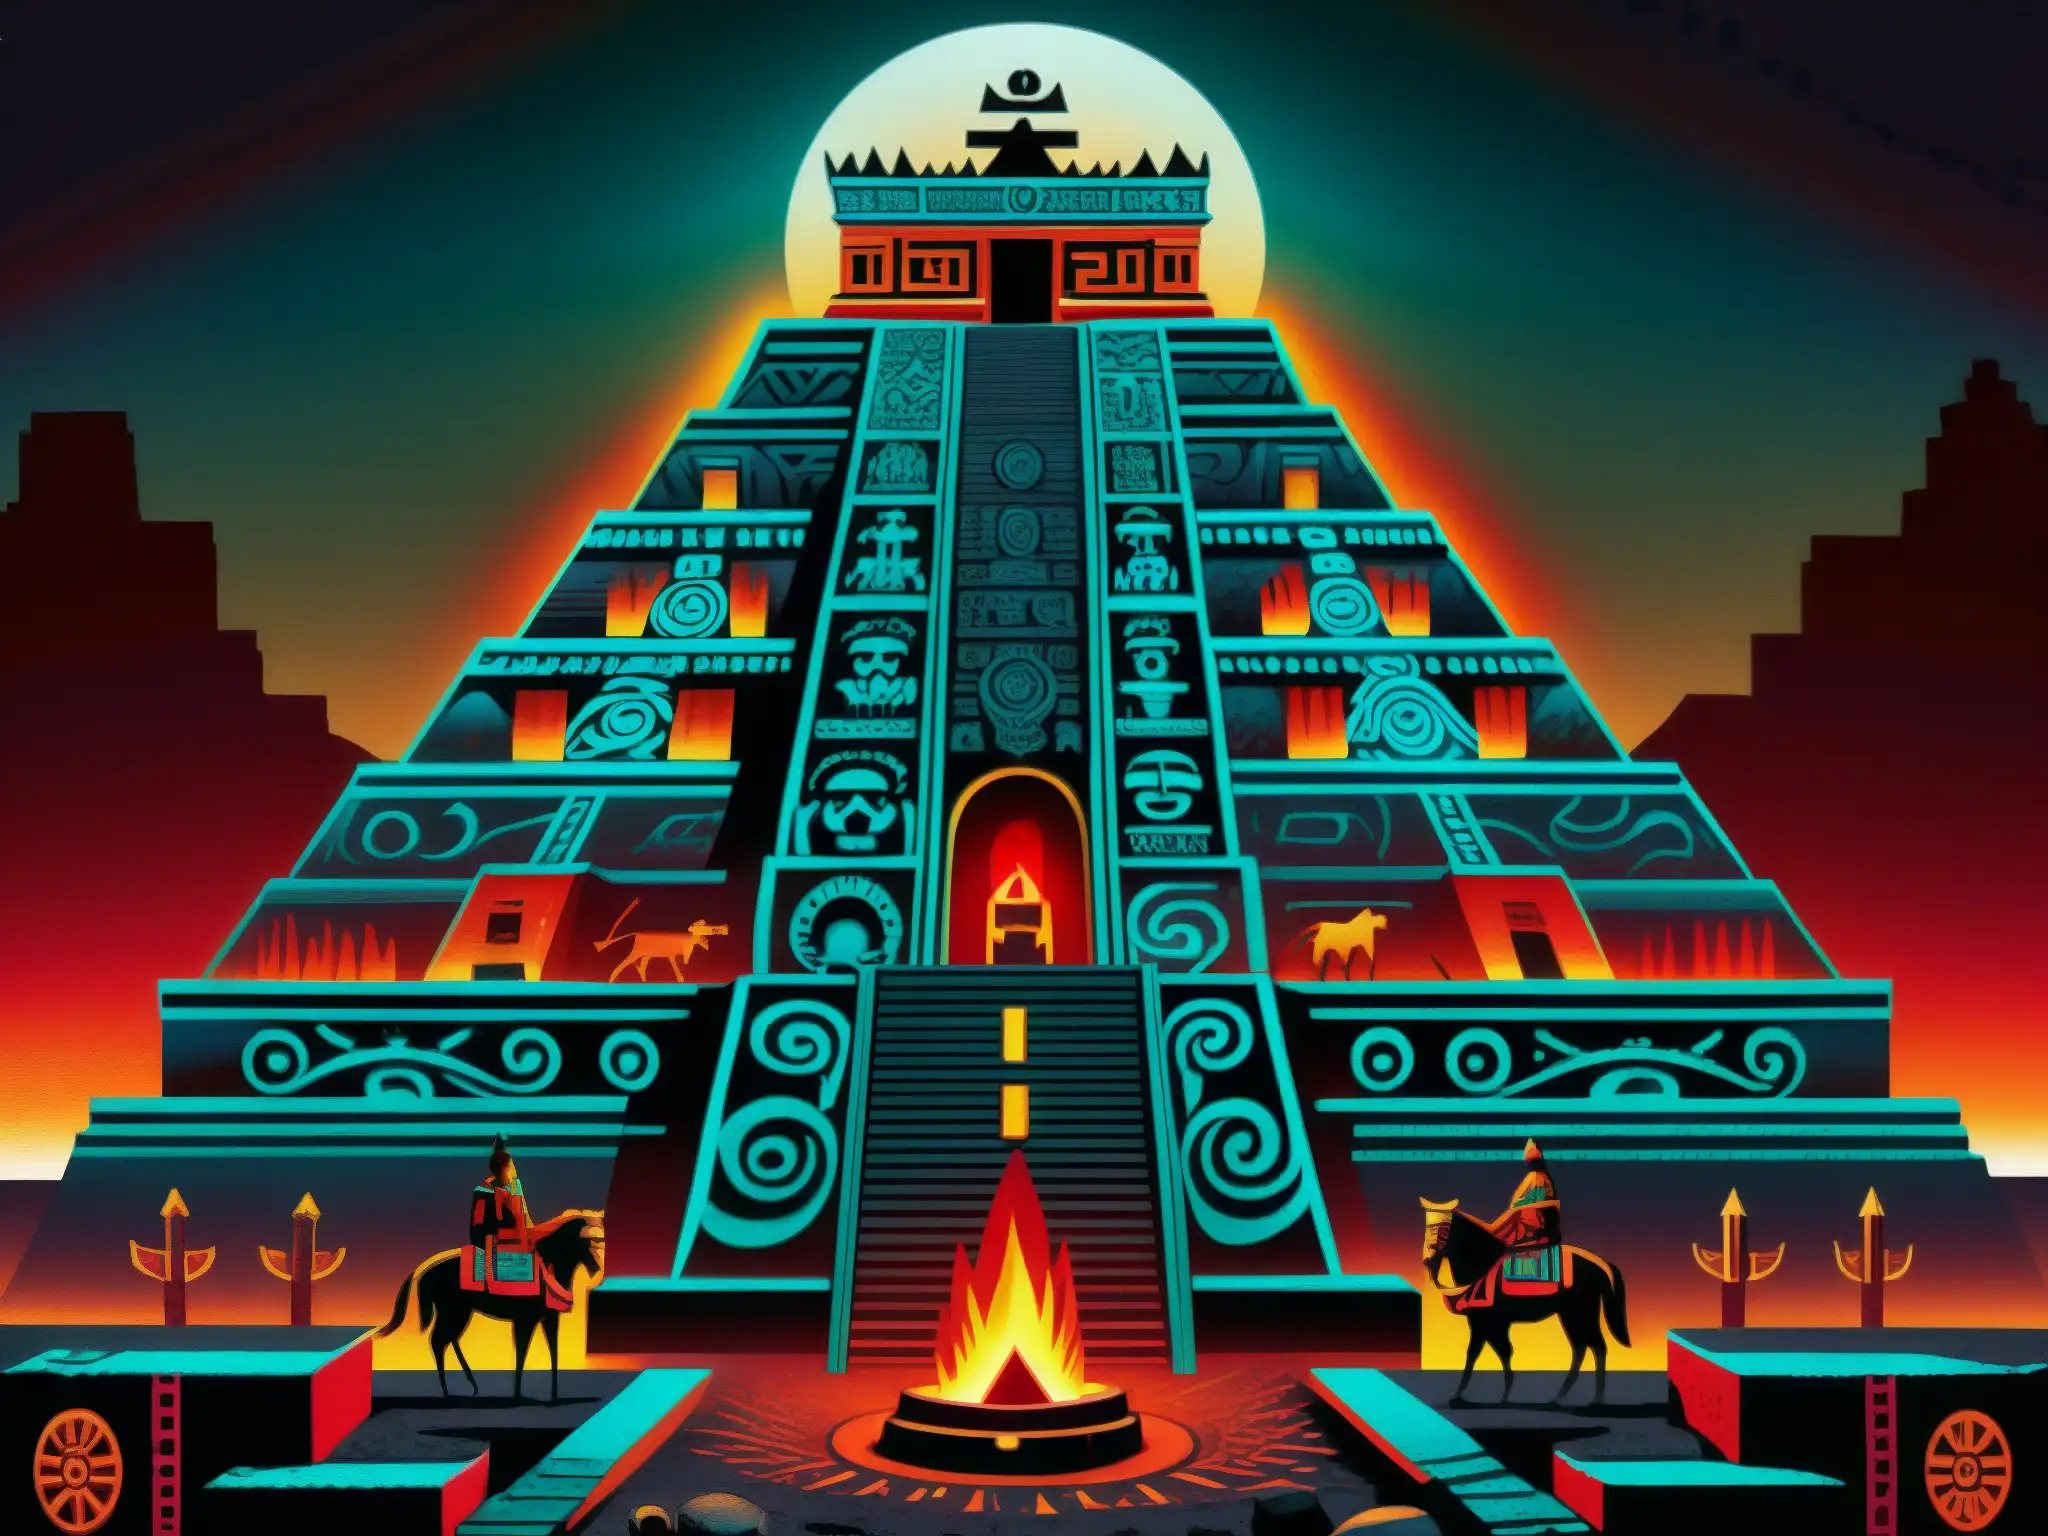 Detalle ultradetallado del Mictlán, el inframundo en la mitología azteca, con paisaje oscuro y místico